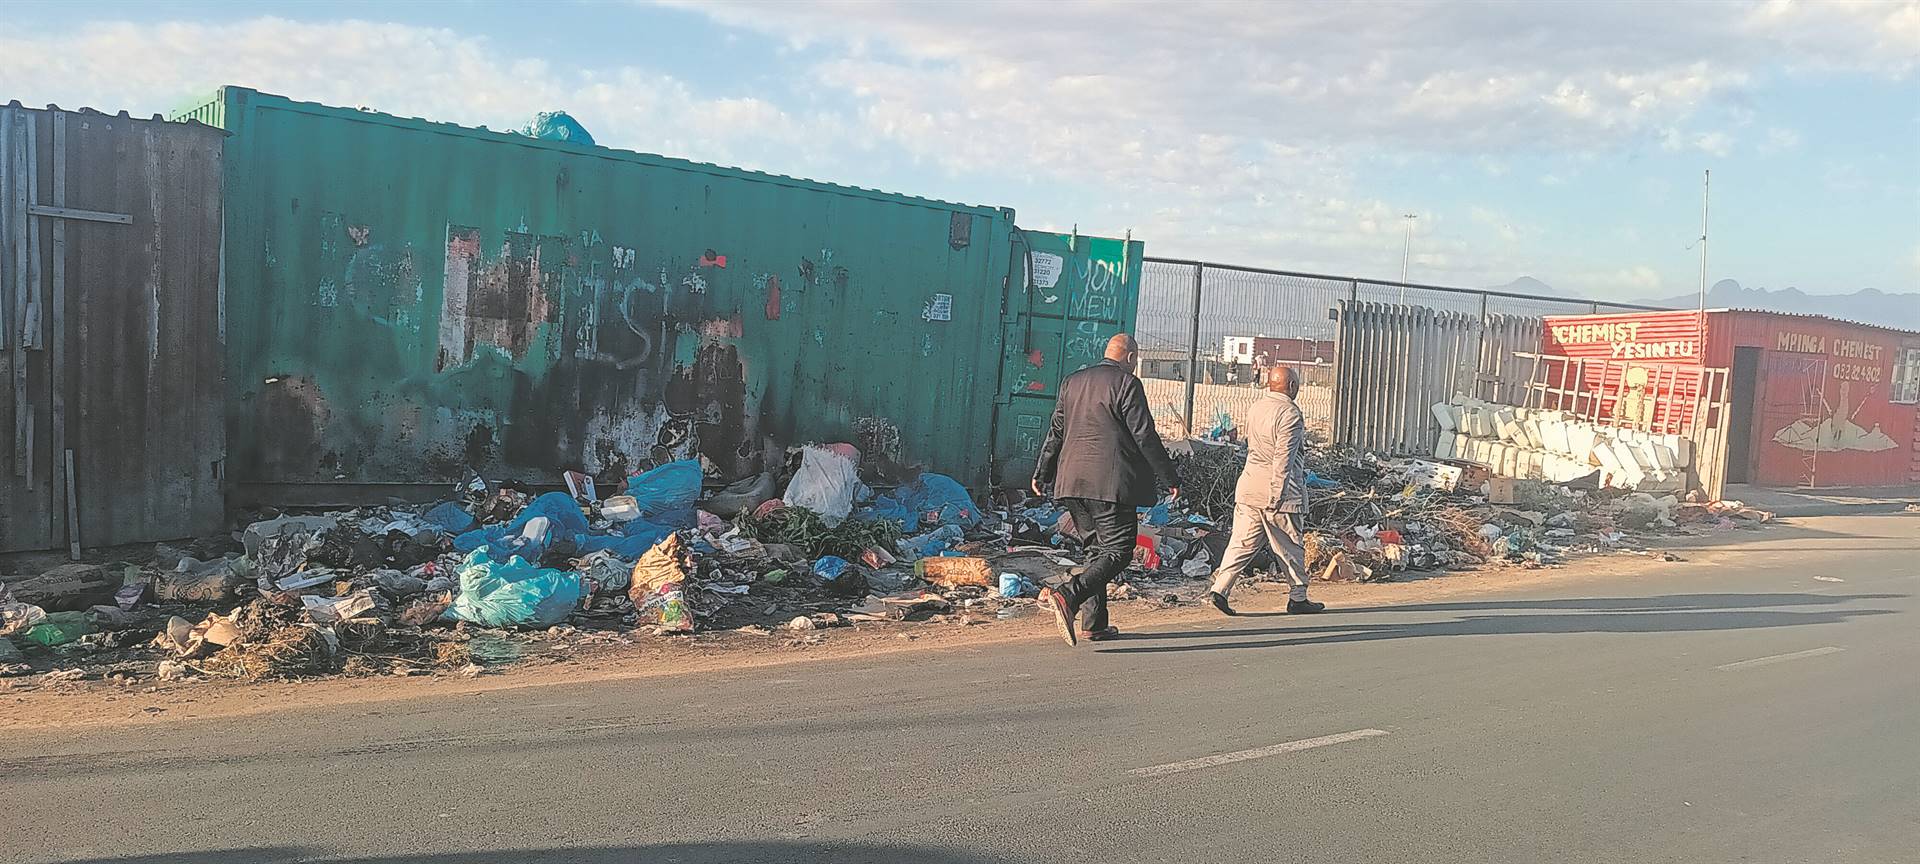 Some of the rubbish piling along Mew Way Road near Endlovini informal settlement in Khayelitsha.PHOTO: UNATHI OBOSE